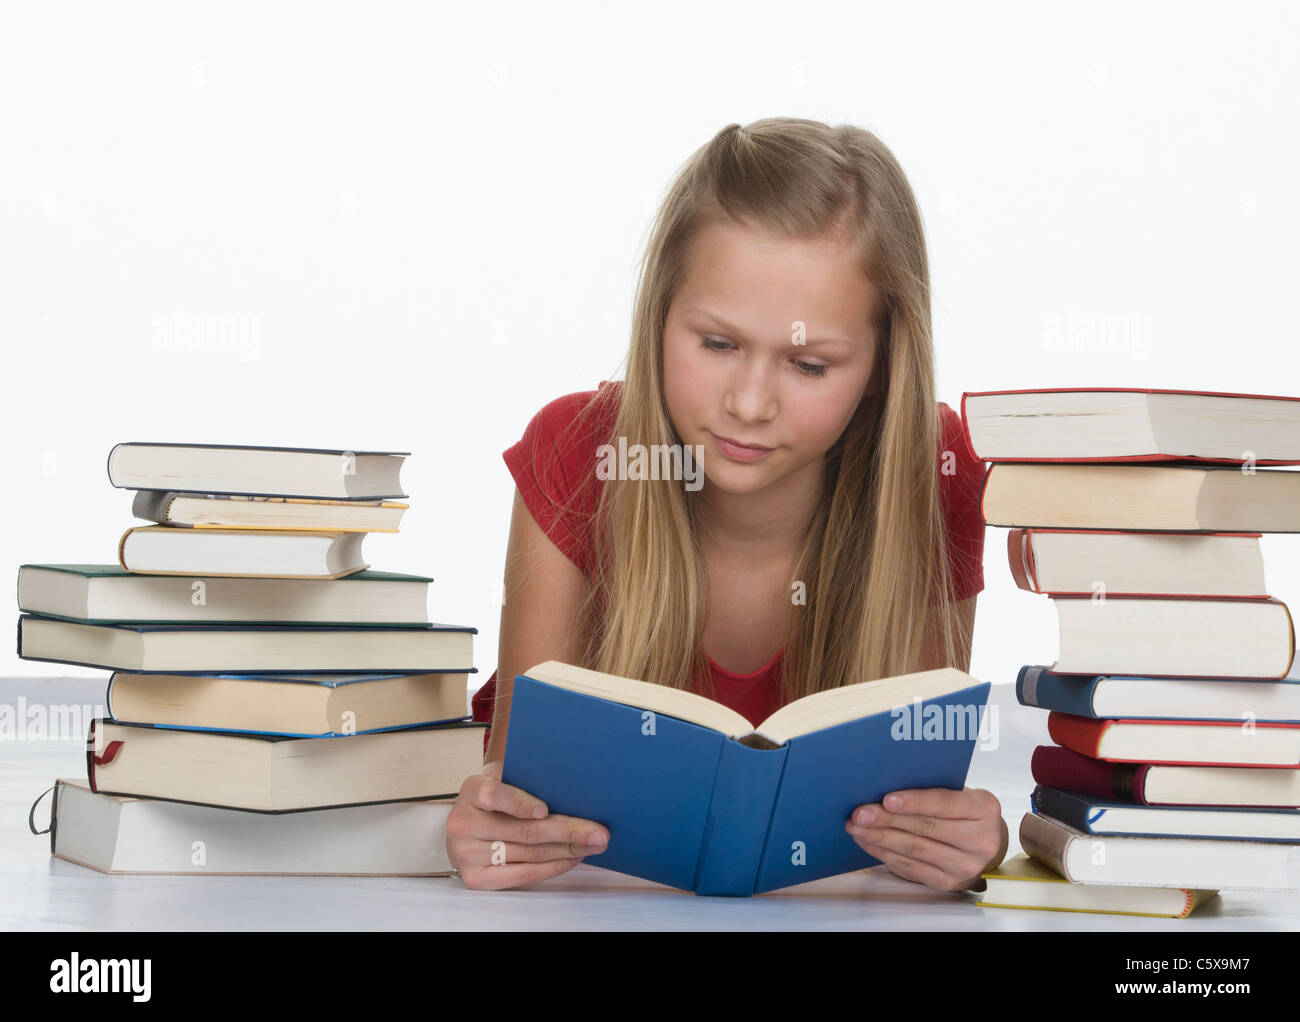 Girl reading book en plus de pile de livres contre fond blanc Banque D'Images